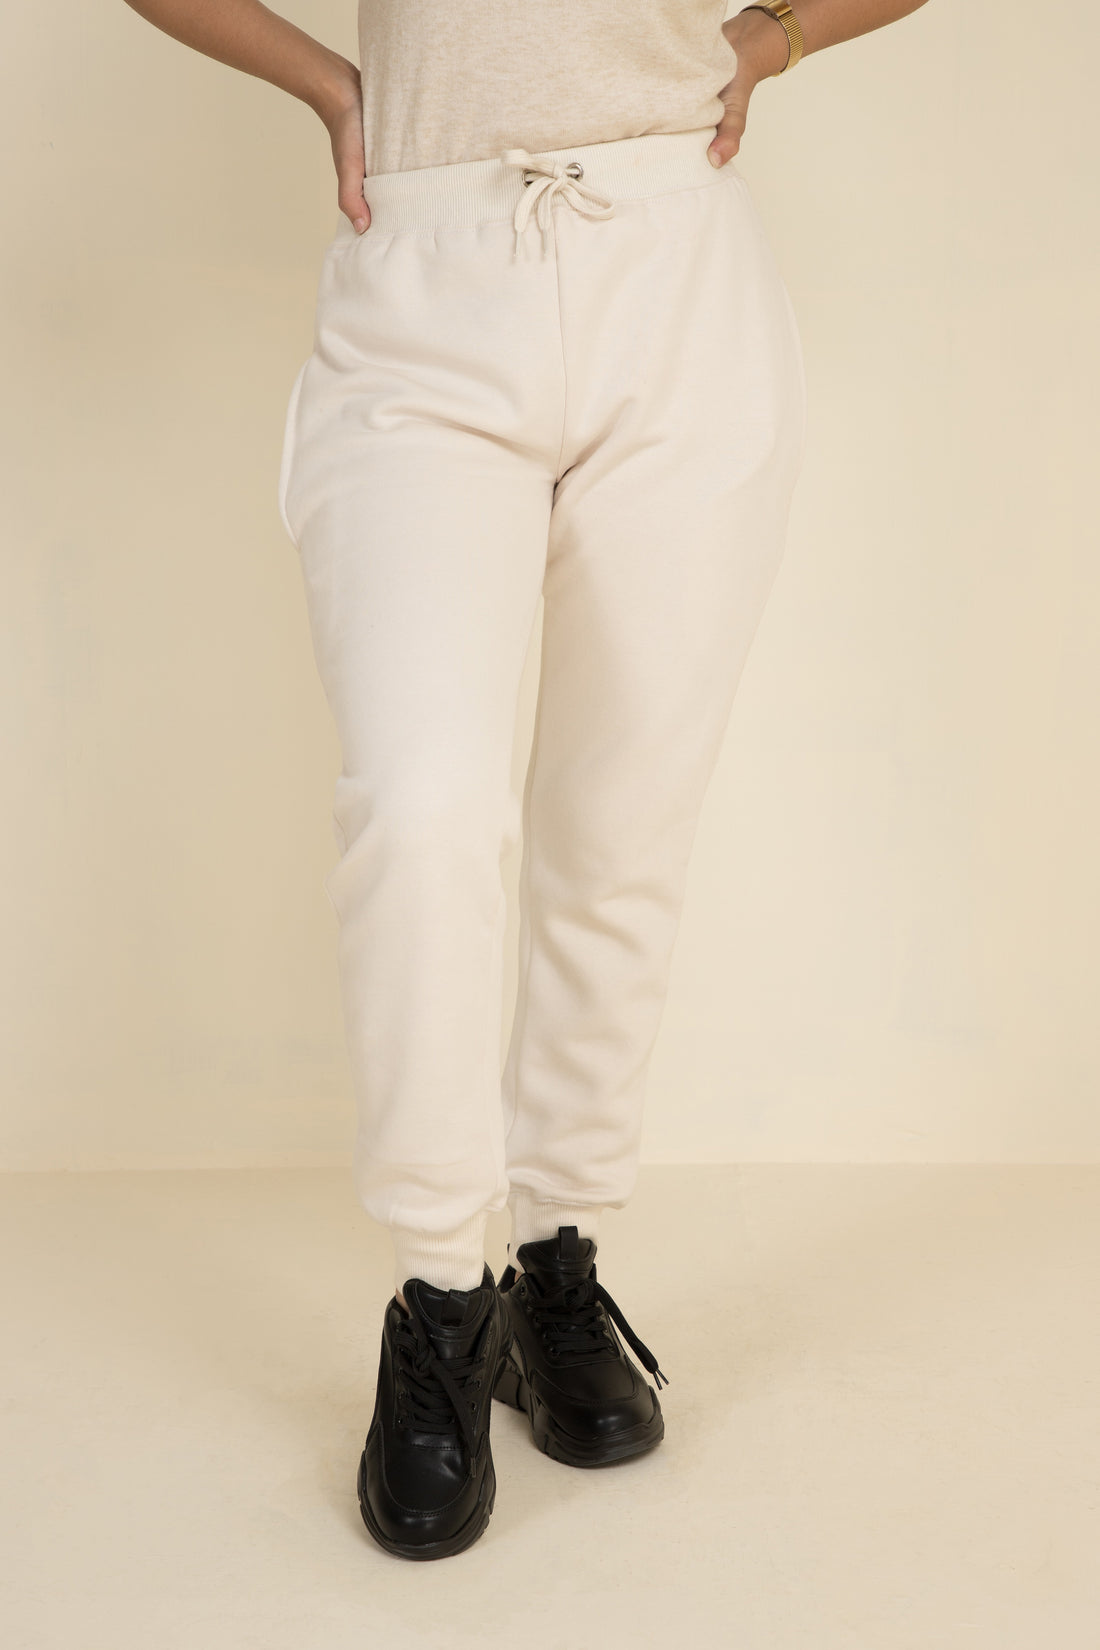 Casual Fleece Pants White